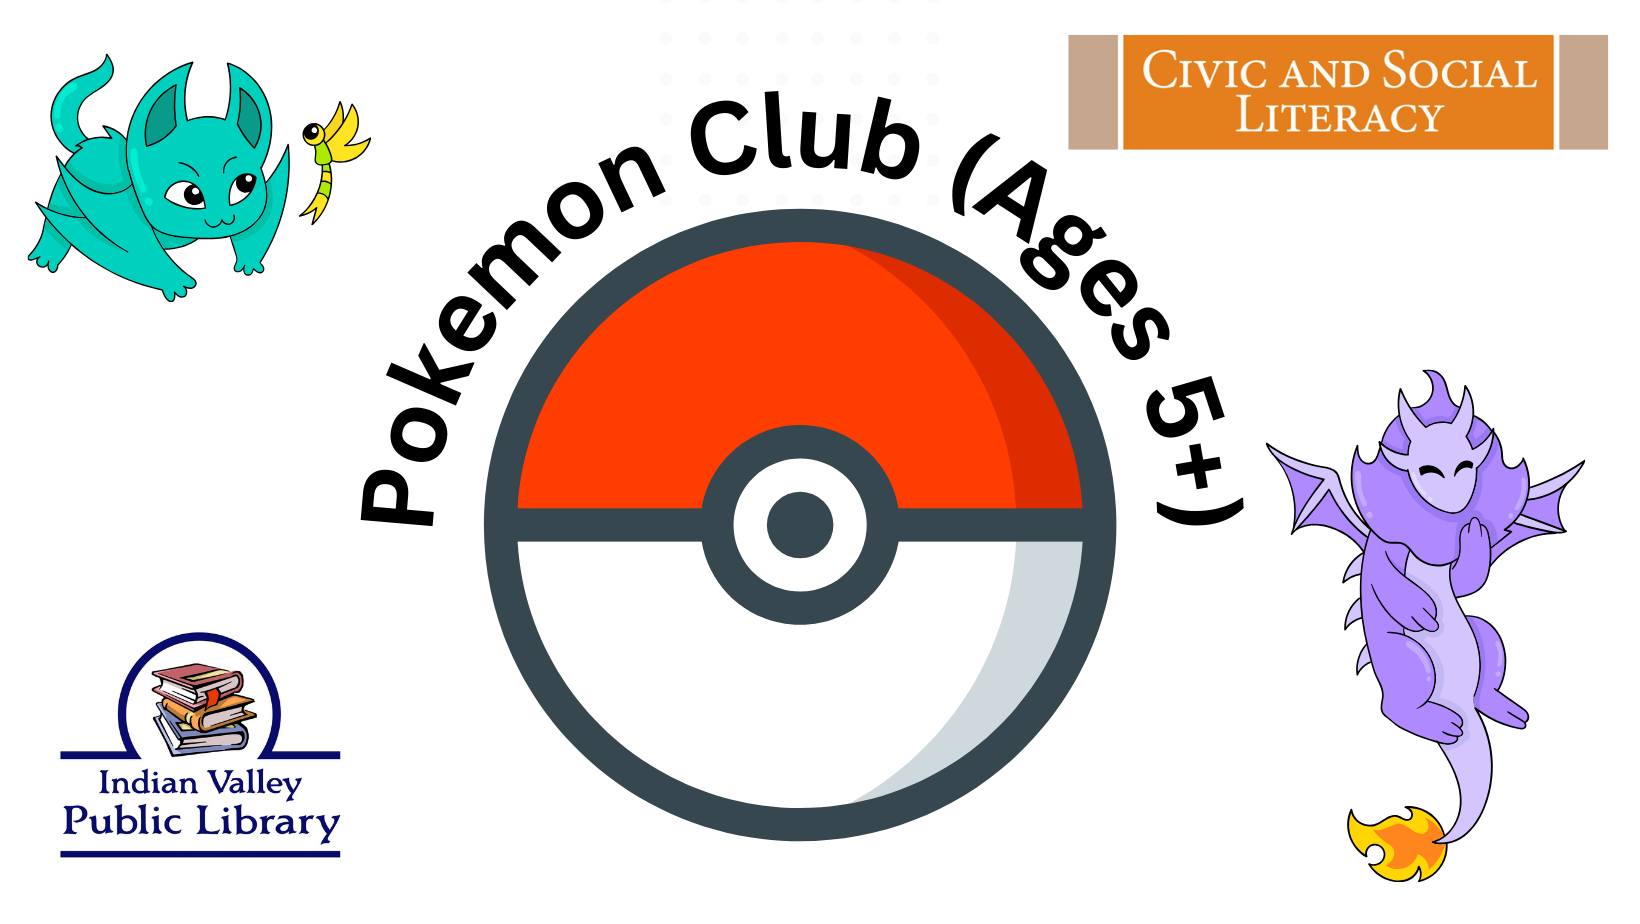 Pokemon Club — Martin Public Library